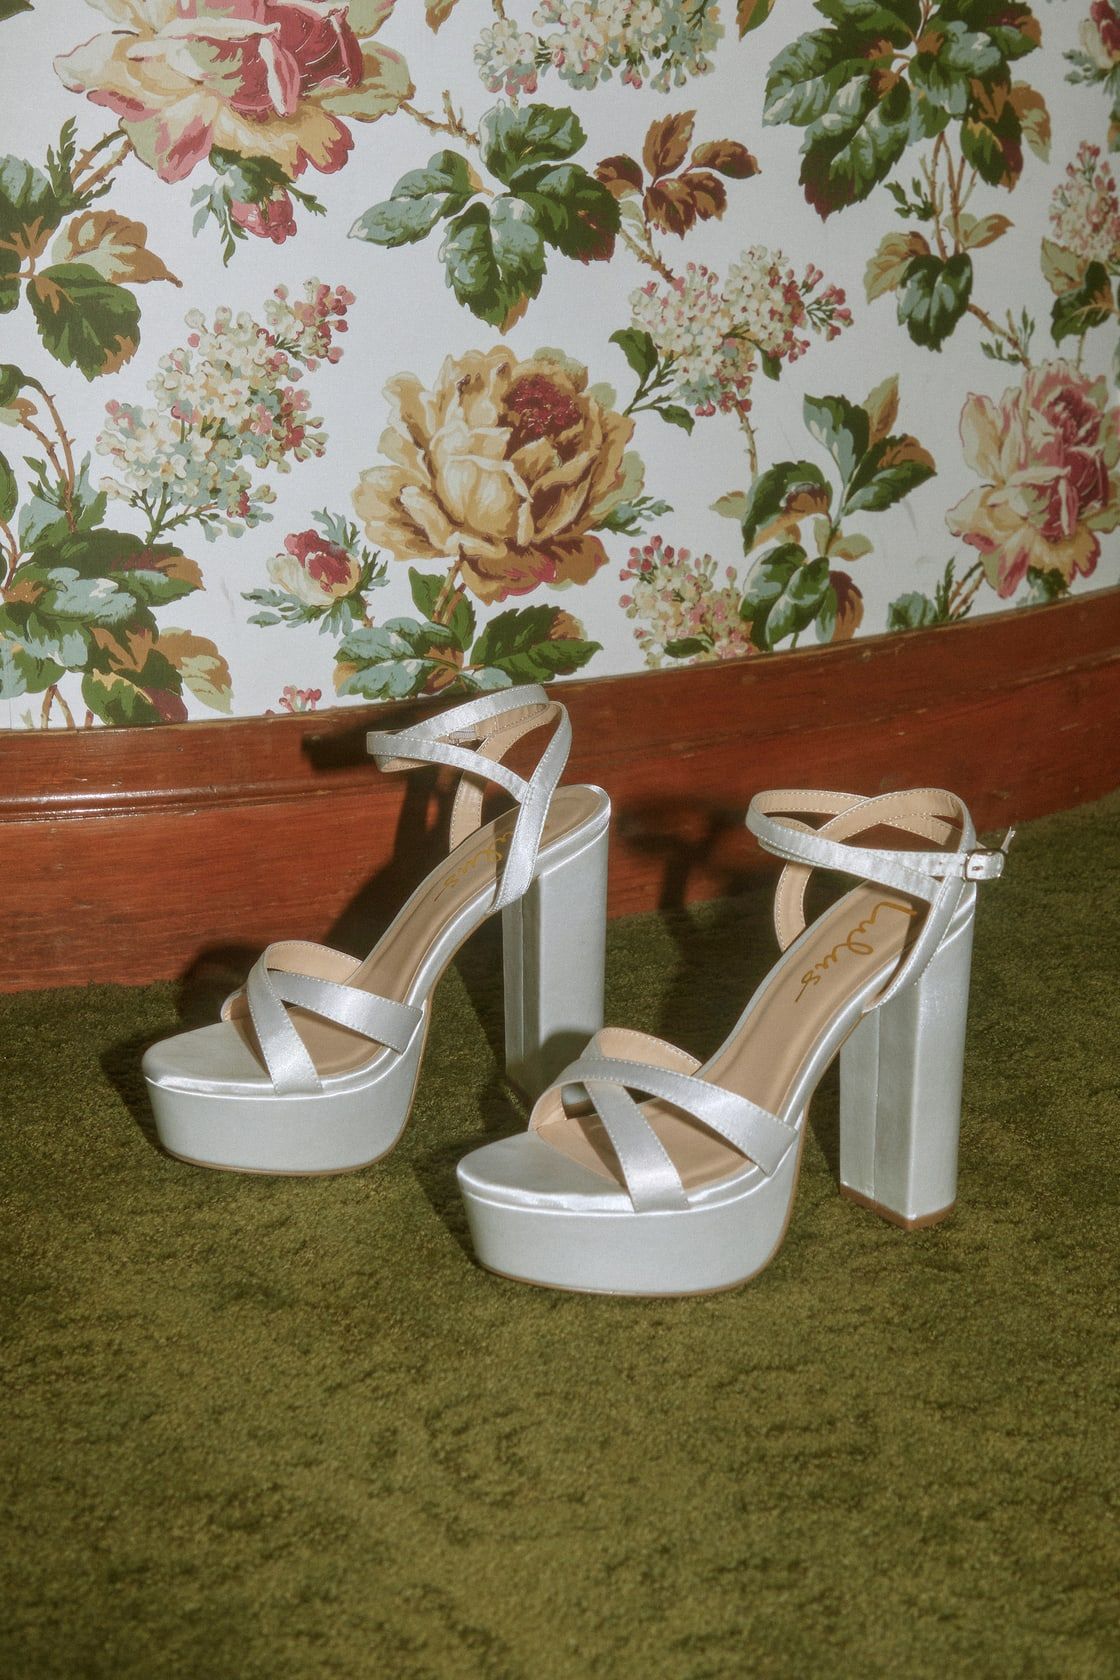 Maisiee White Satin Platform High Heel Ankle Strap Sandals | Lulus